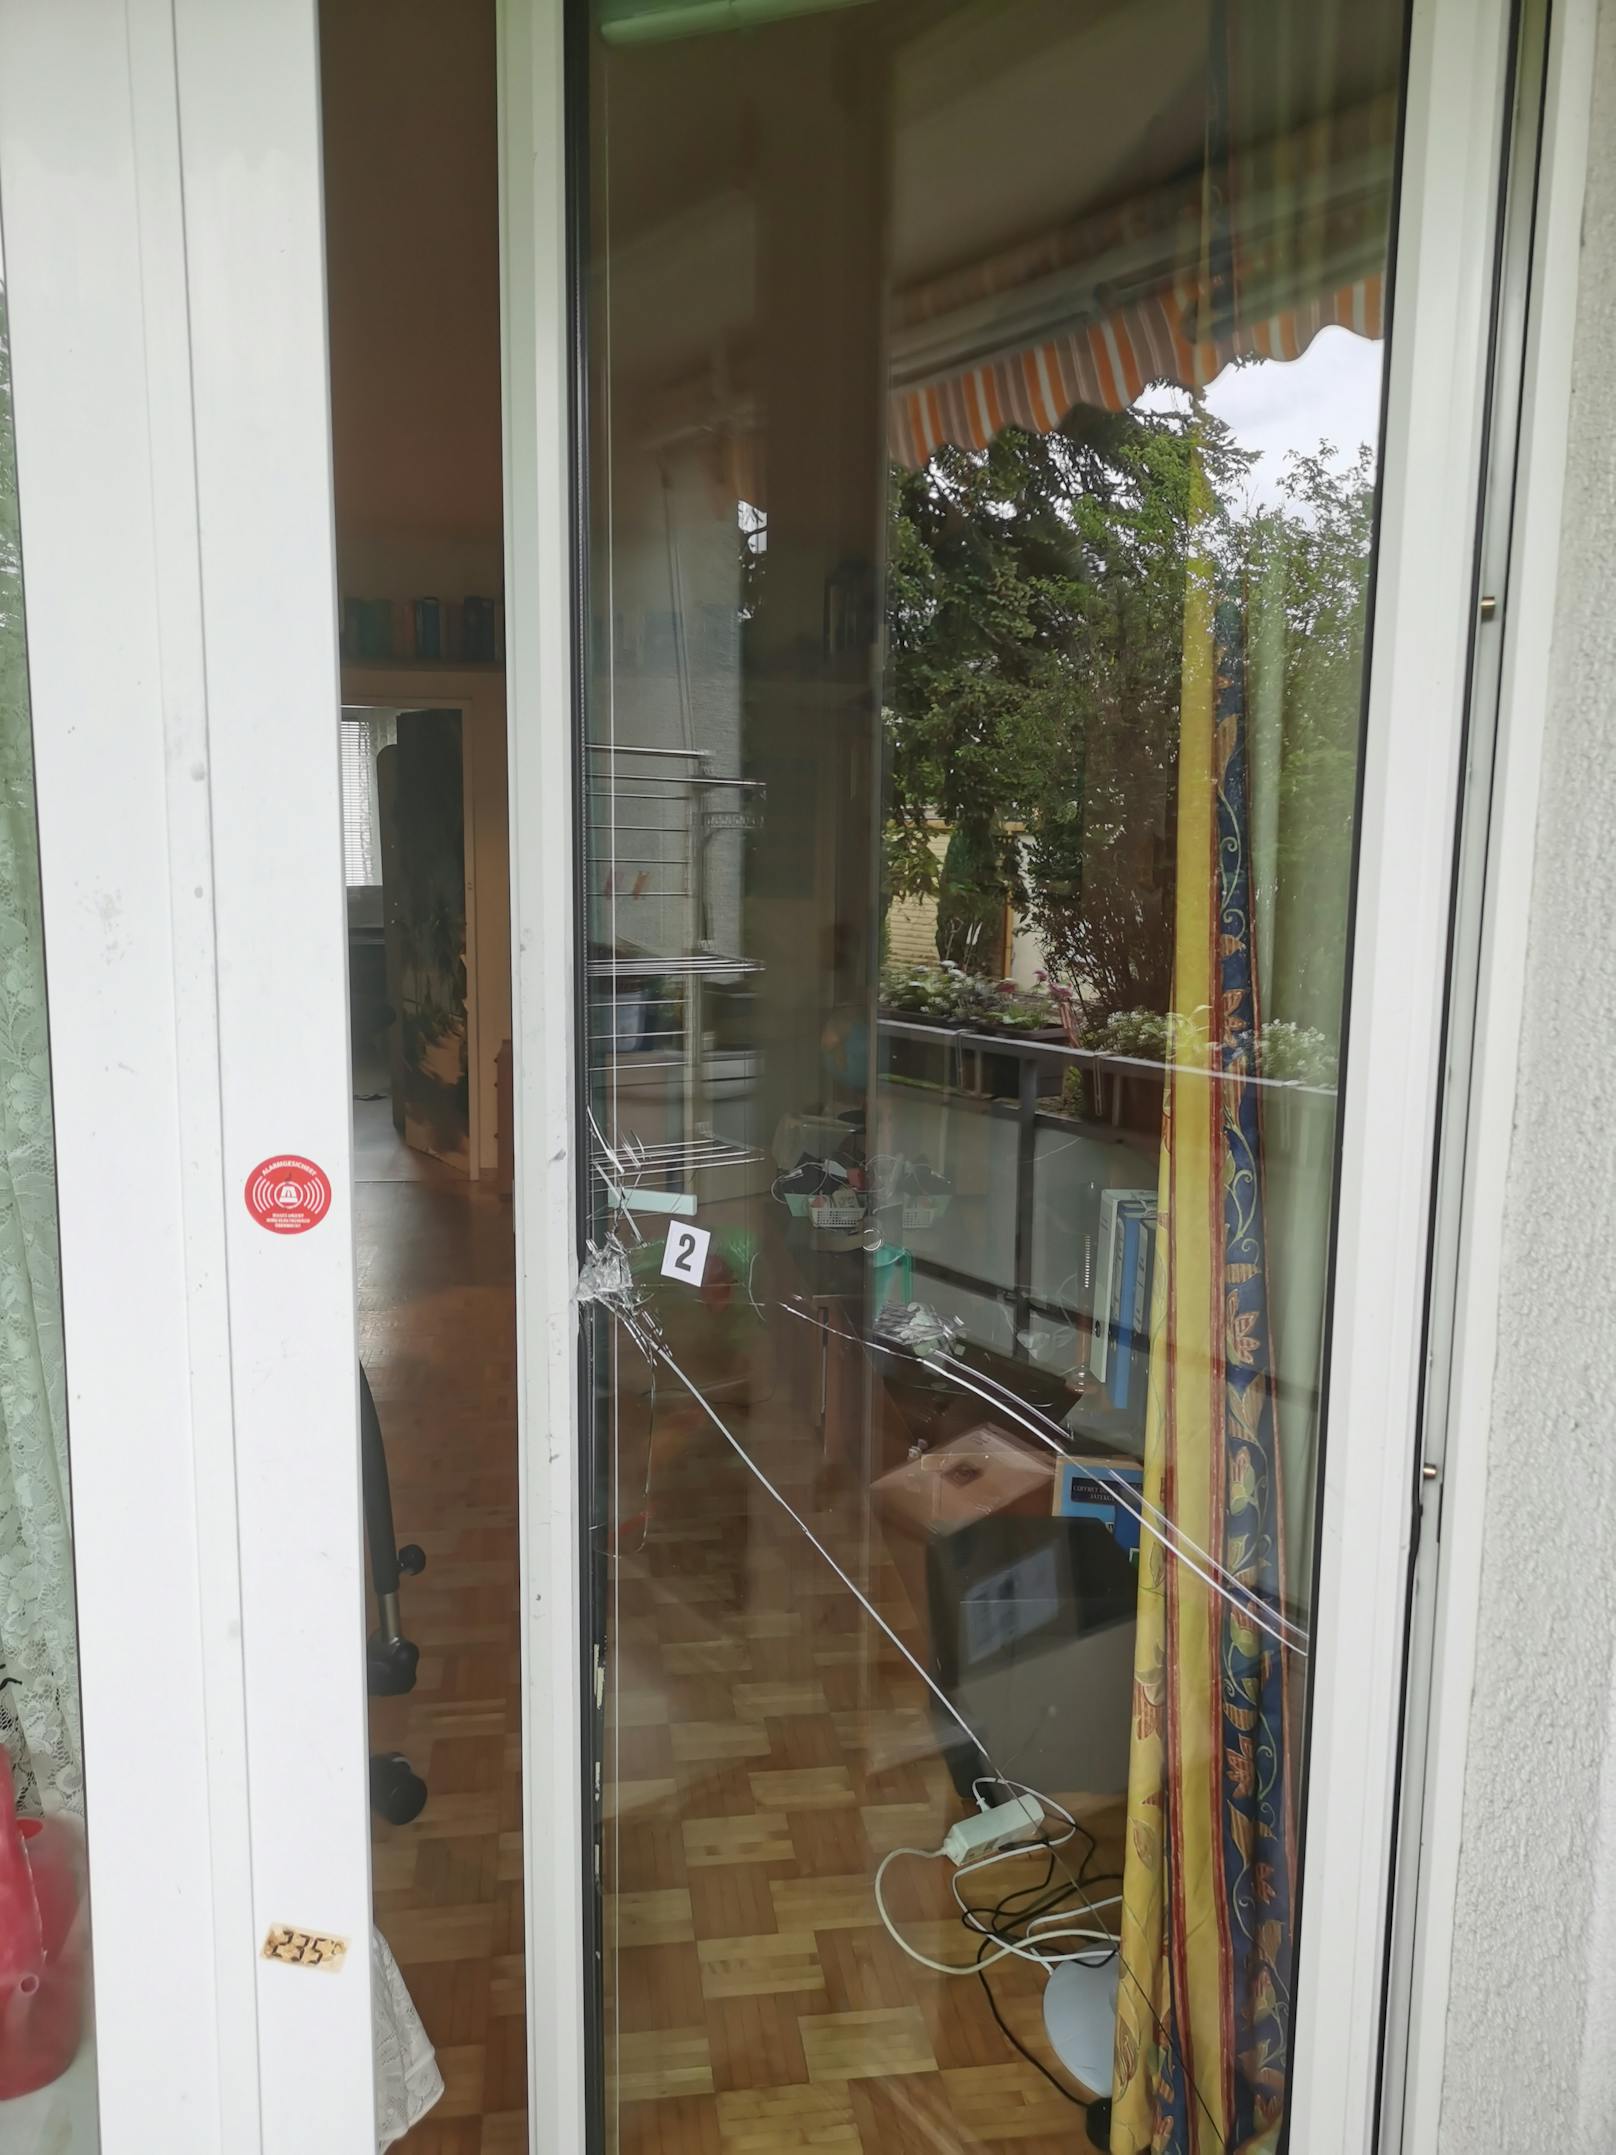 Der Einbrecher (20) versuchte, über die balkontür bei der Familie W. in Wien-Hietzing einzusteigen. Schaden: 900 Euro.